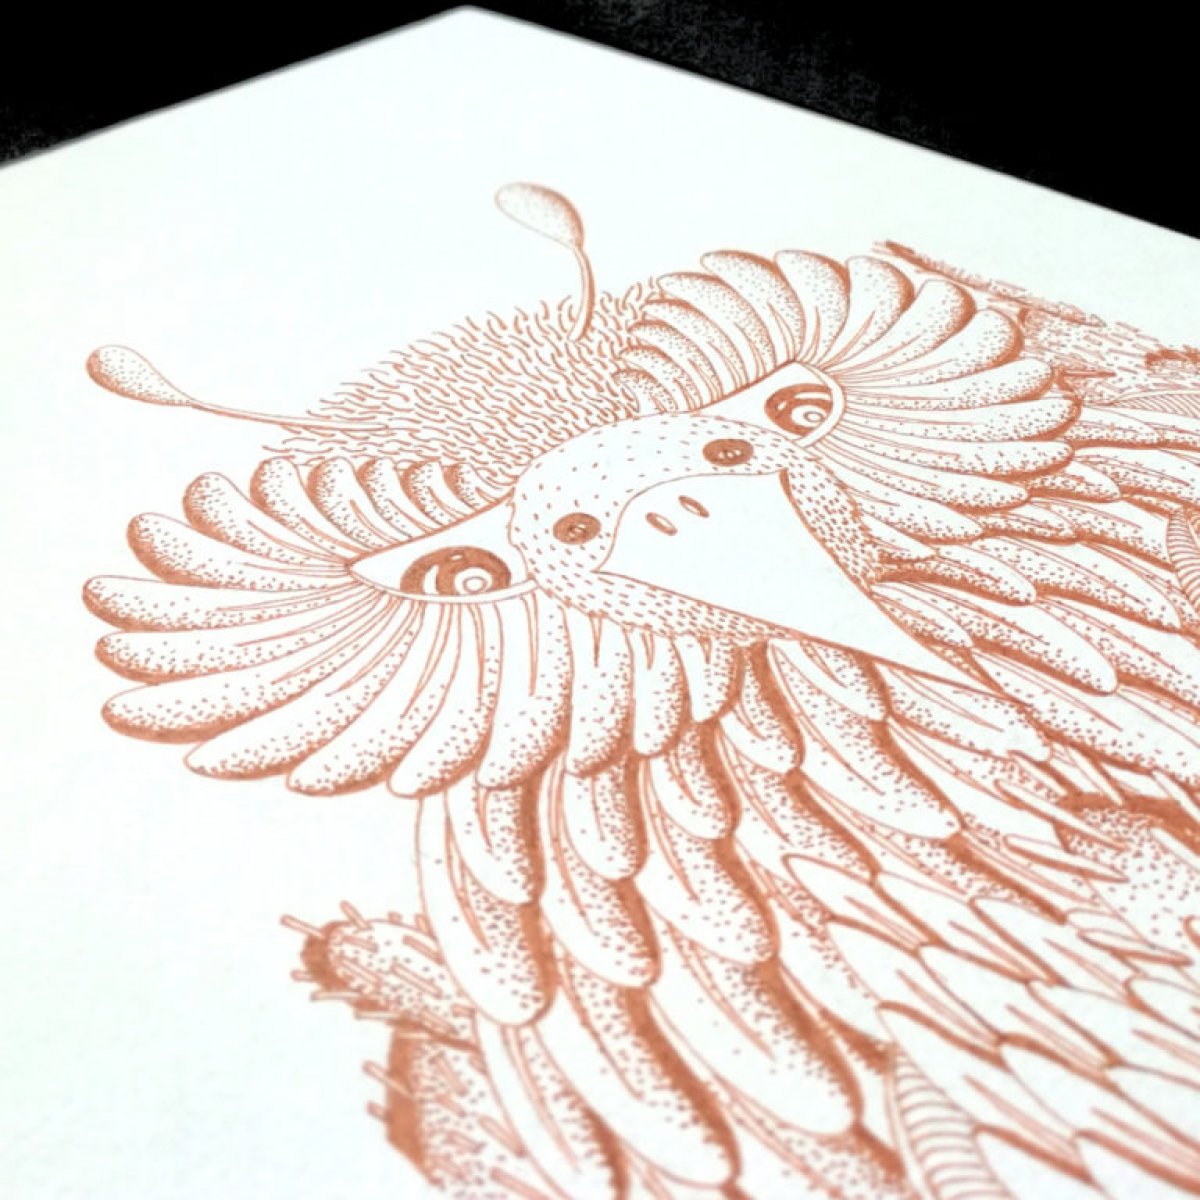 Owlird, Dessin original en sépia sur papier 300 grammes.